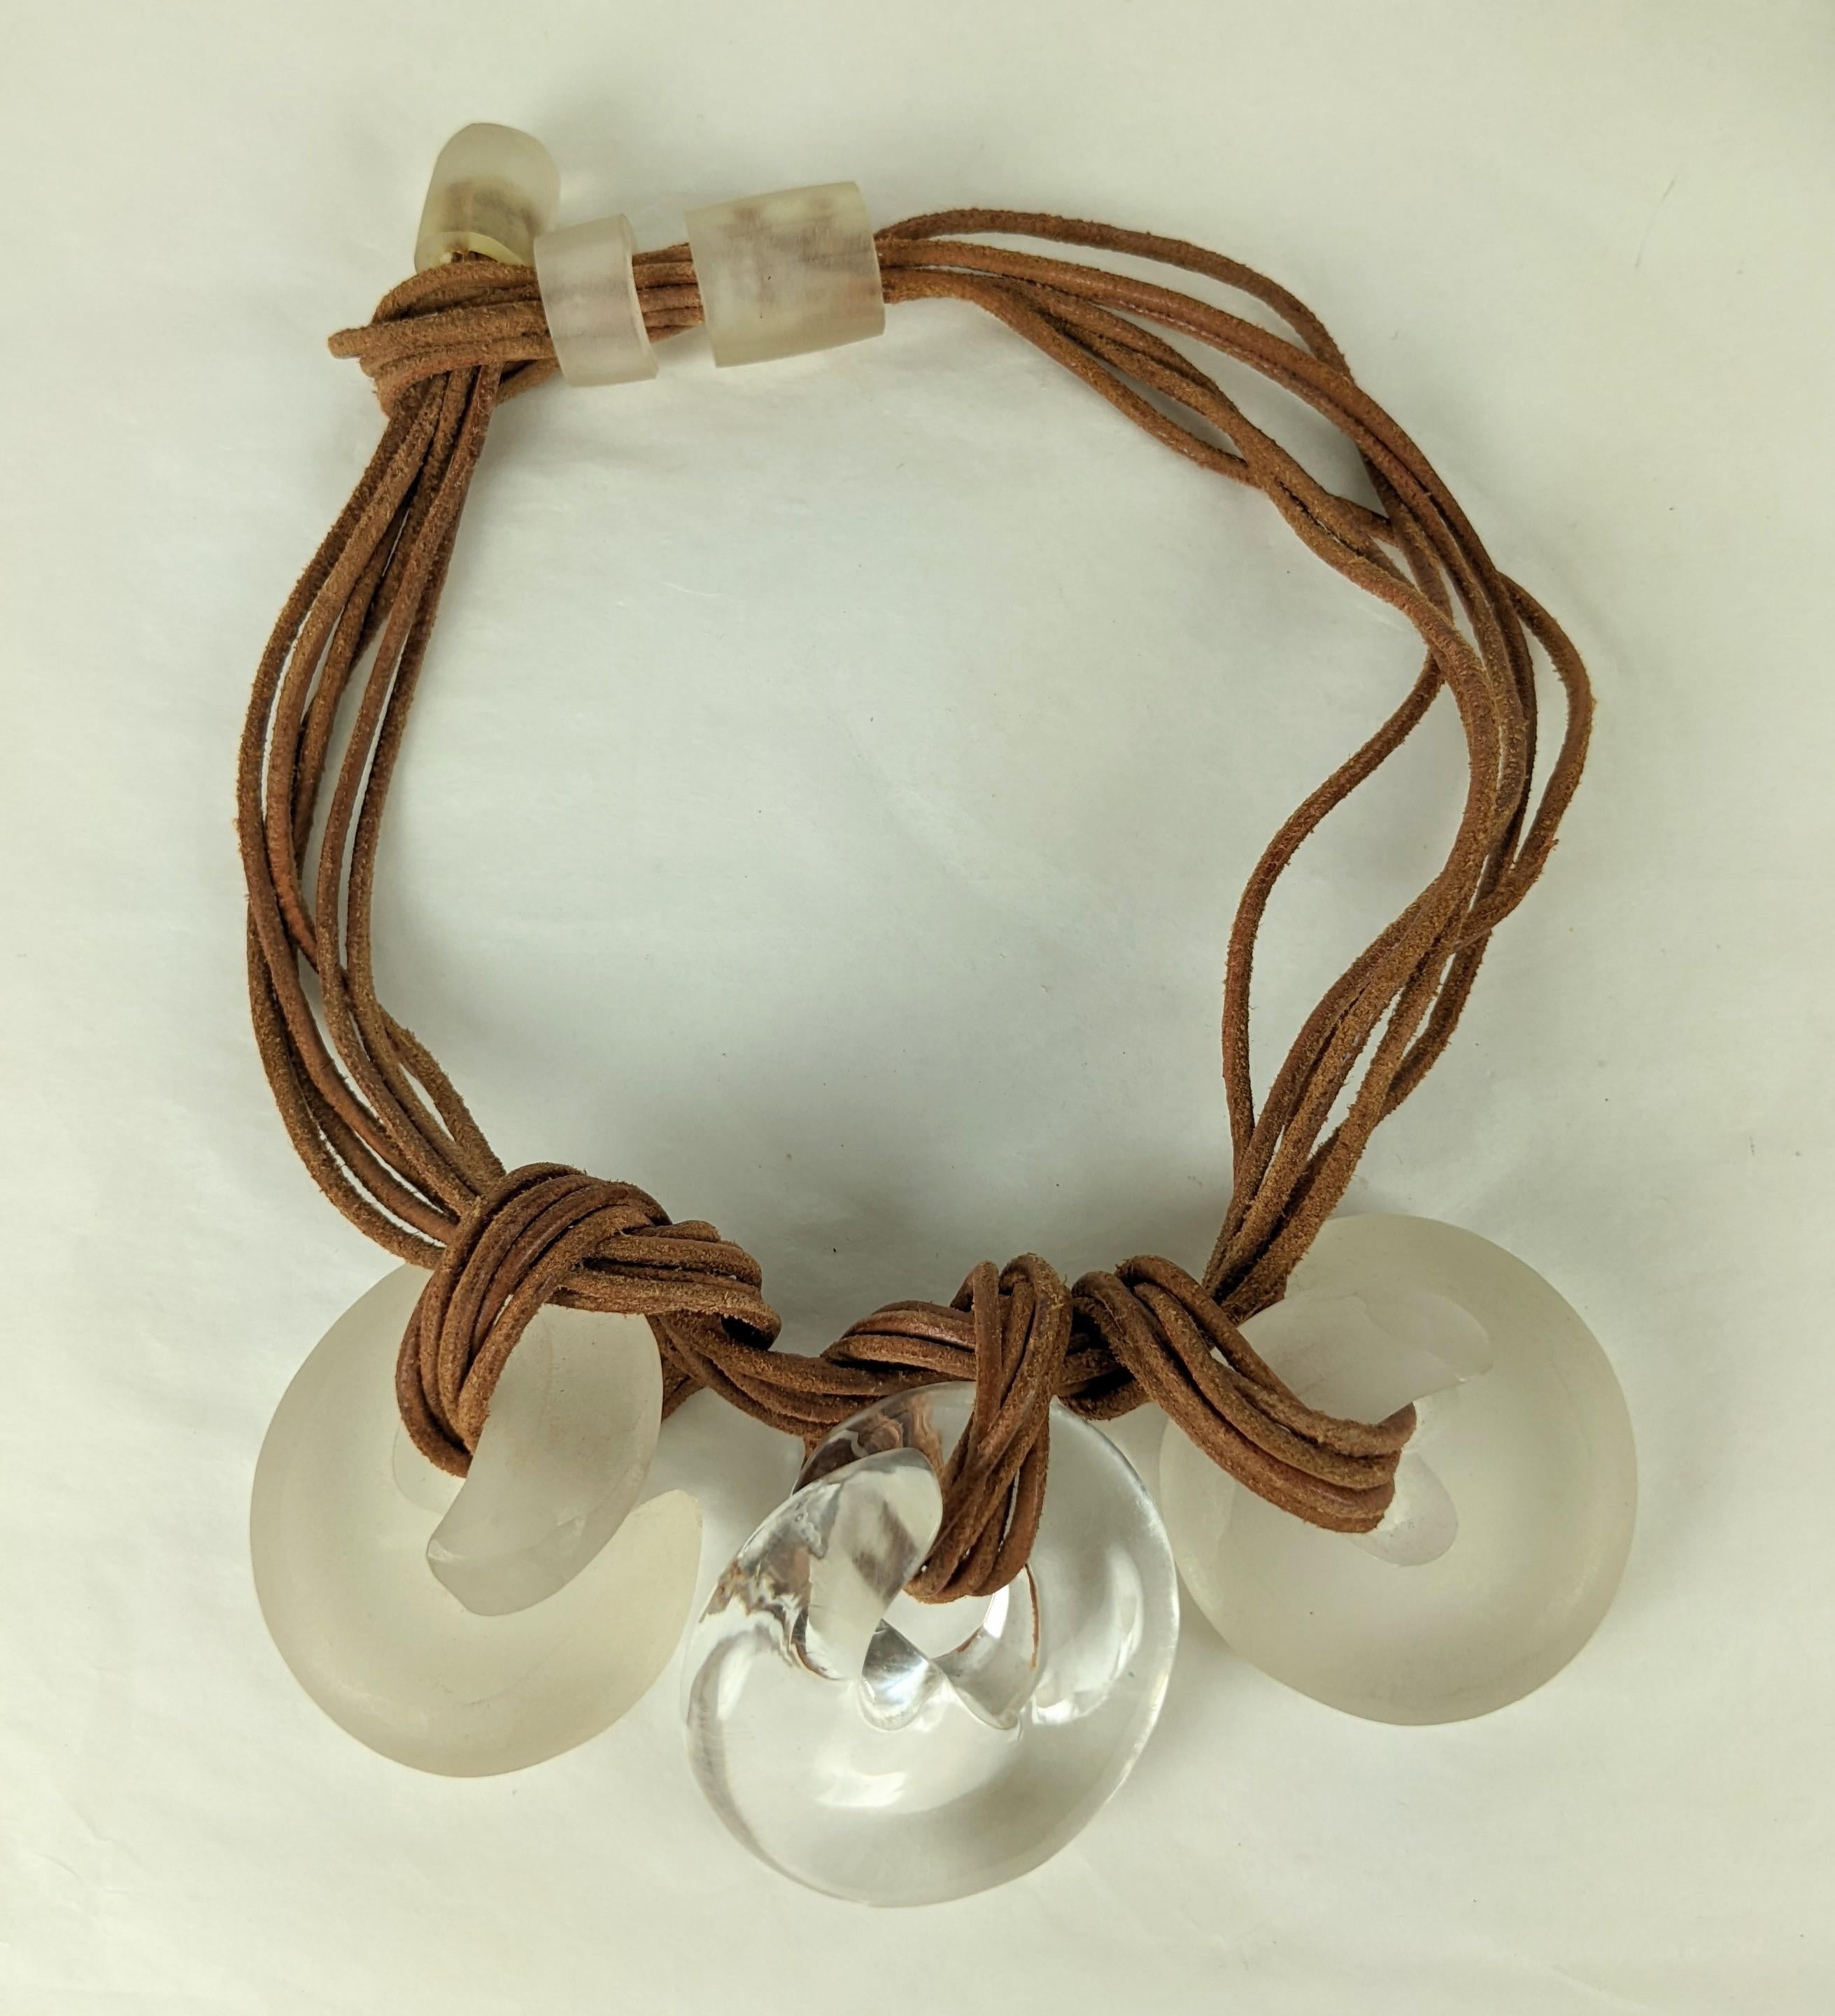 Auffällige Lucite Coil und Rawhide Anhänger Halskette aus den 1980er Jahren im Stil von Cara Croninger. 3 handgeschnitzte Lucite-Wirbel sind auf Rohleder mit gefrosteten Lucite-Haltern und -Verschluss geknotet. 2 der Wirbel sind matt gefrostet und